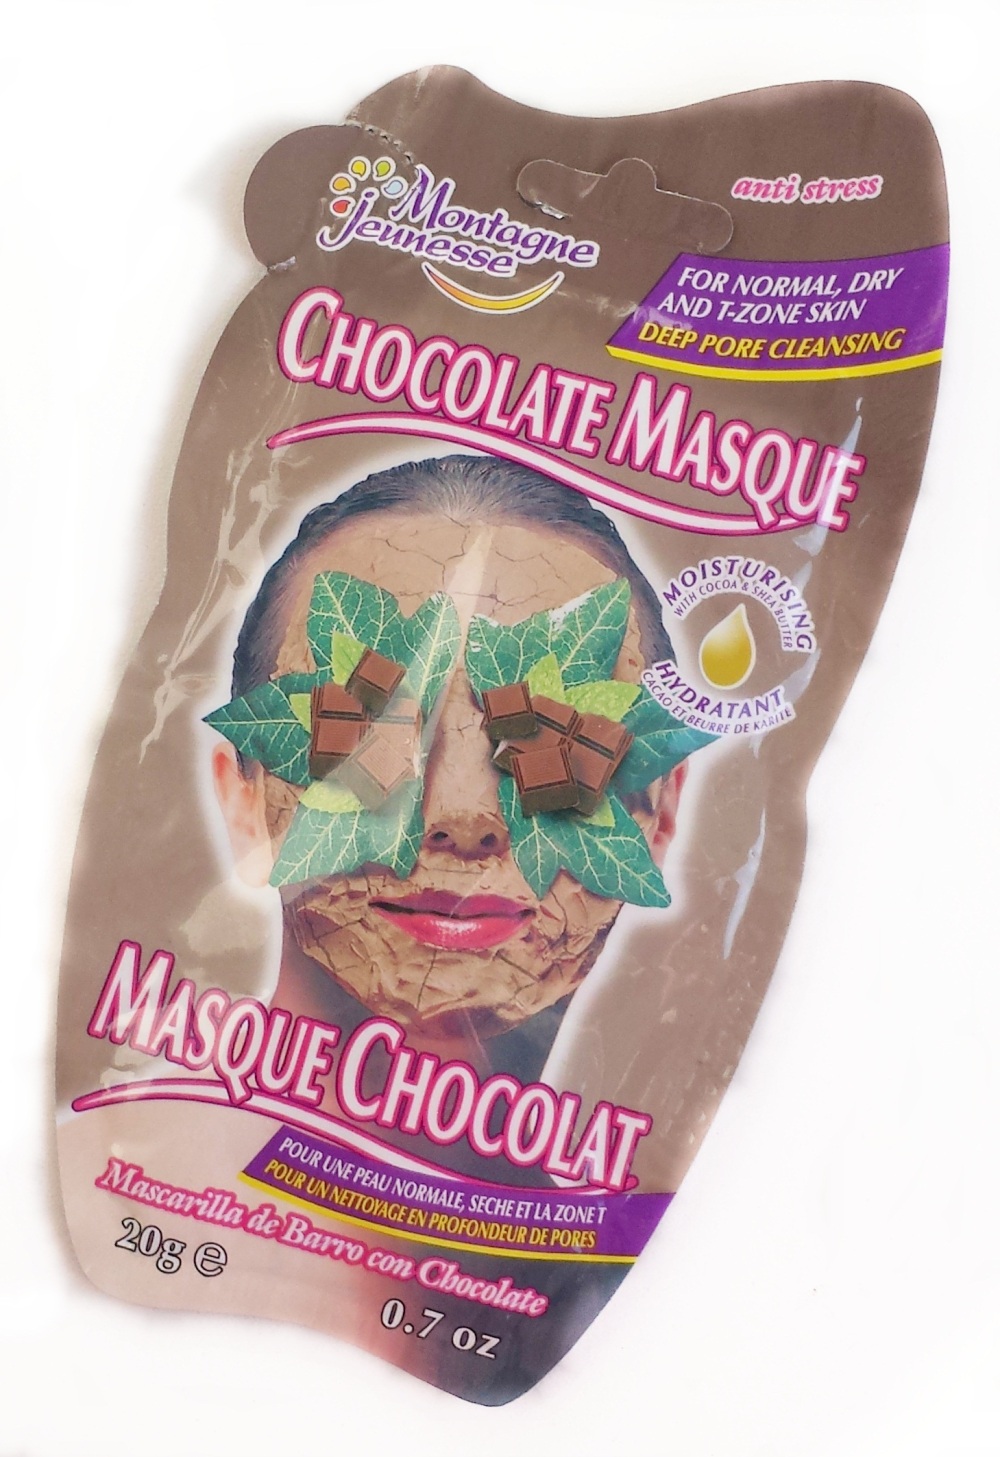 Chocolate Masque